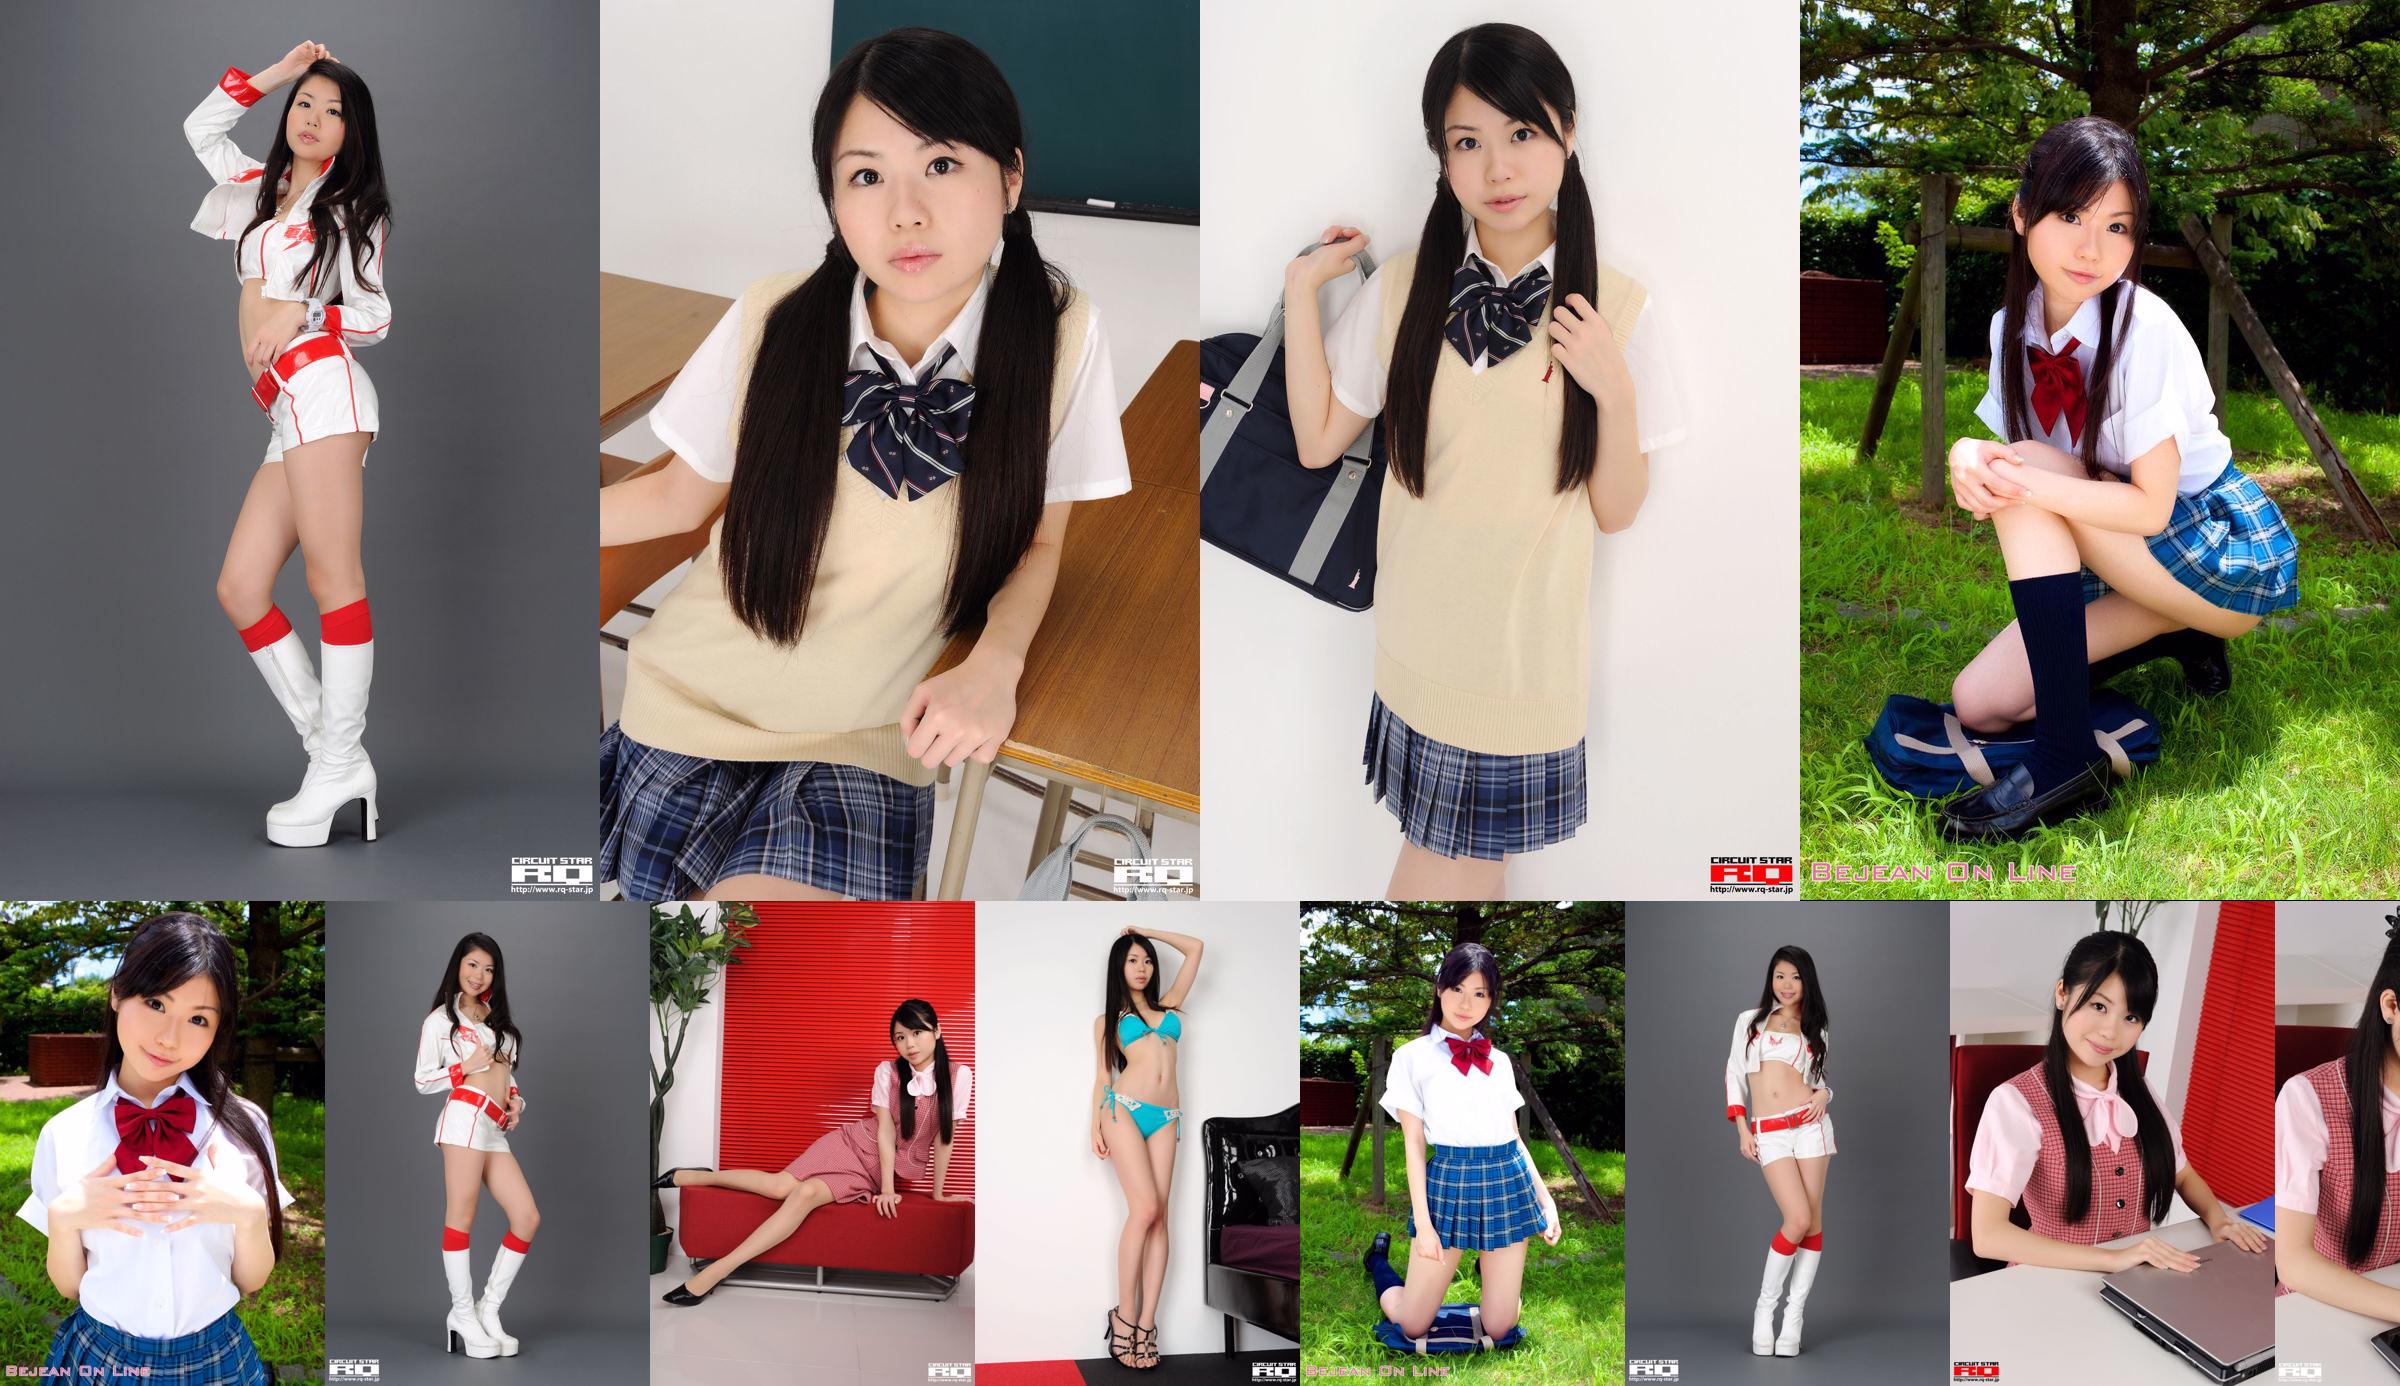 [RQ-STAR] NO.00436 Série de uniforme escolar Ikehara Toumi School Girl No.09c29d Página 2